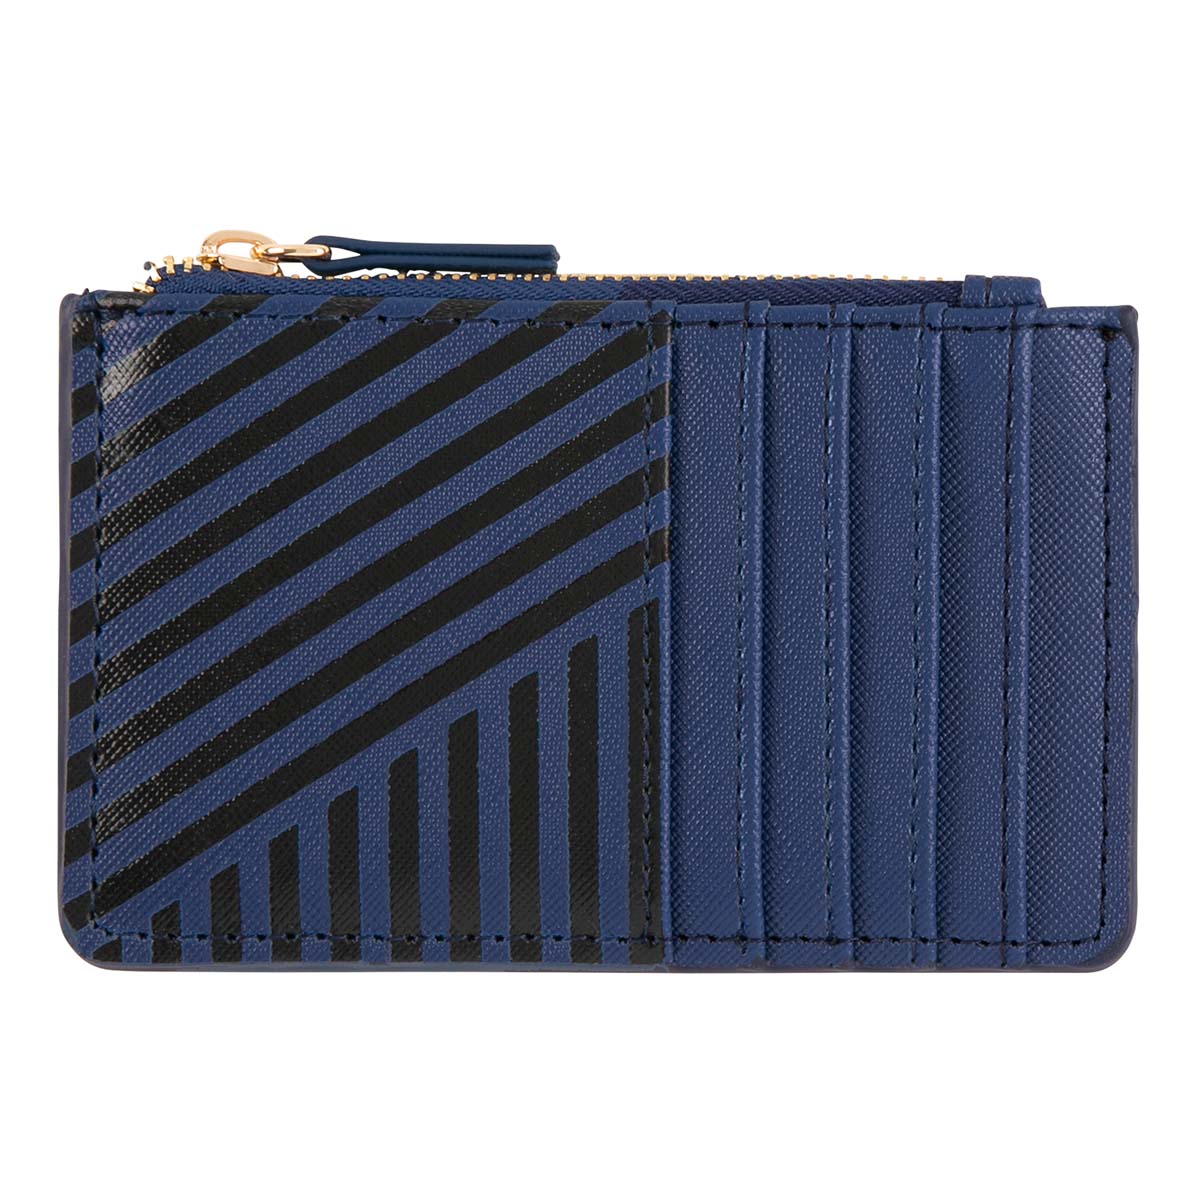 Porte-cartes zippé - rayures bleu marine et noires